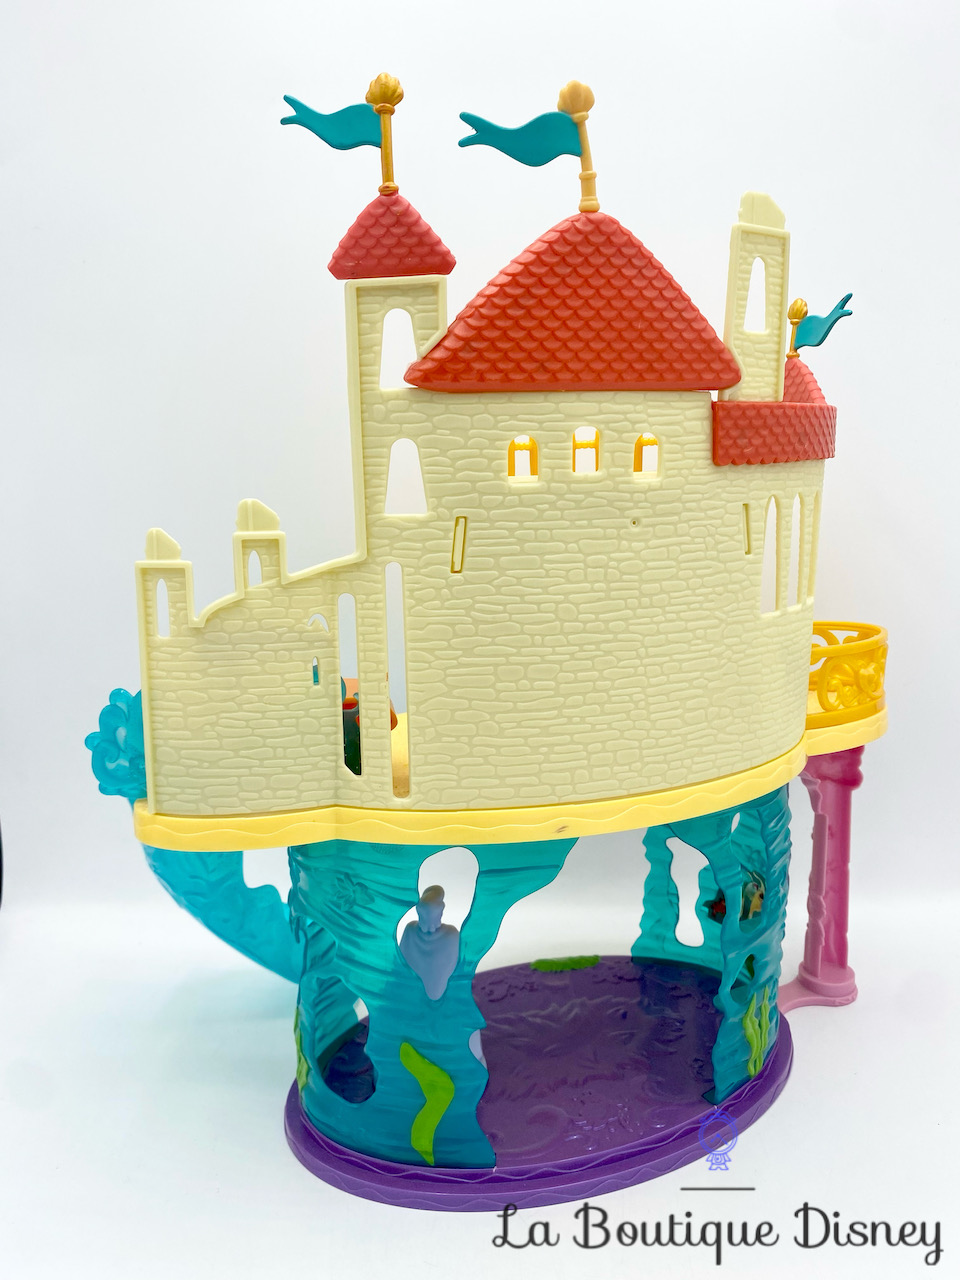 jouet-chateau-la-petite-sirène-disney-mattel-figurines-magiclip-mini-poupées-6